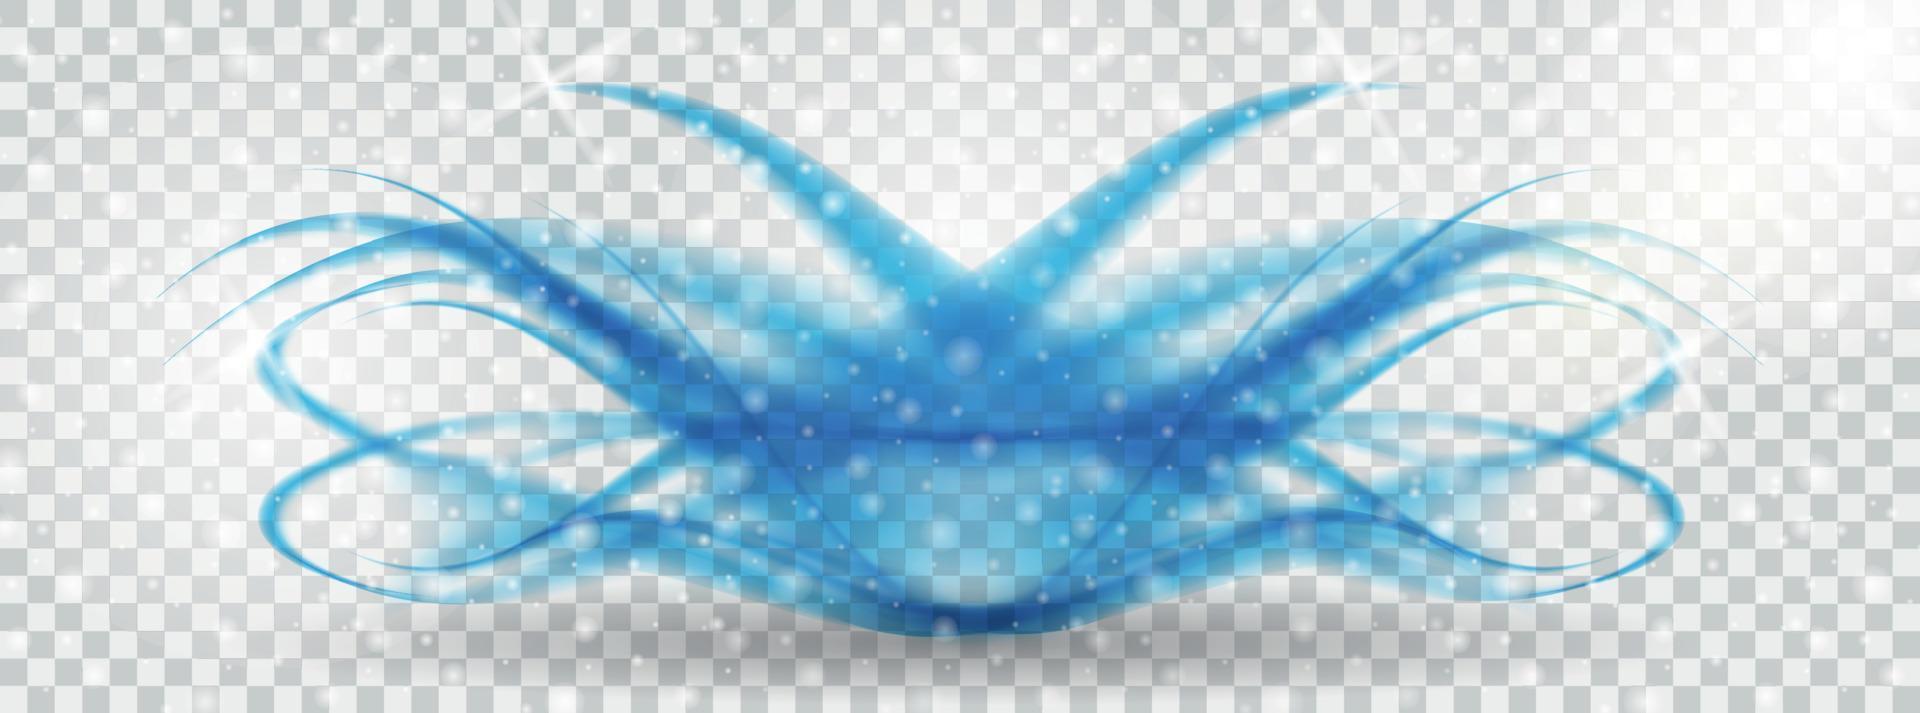 Ola azul abstracta sobre fondo transparente. ilustración vectorial vector